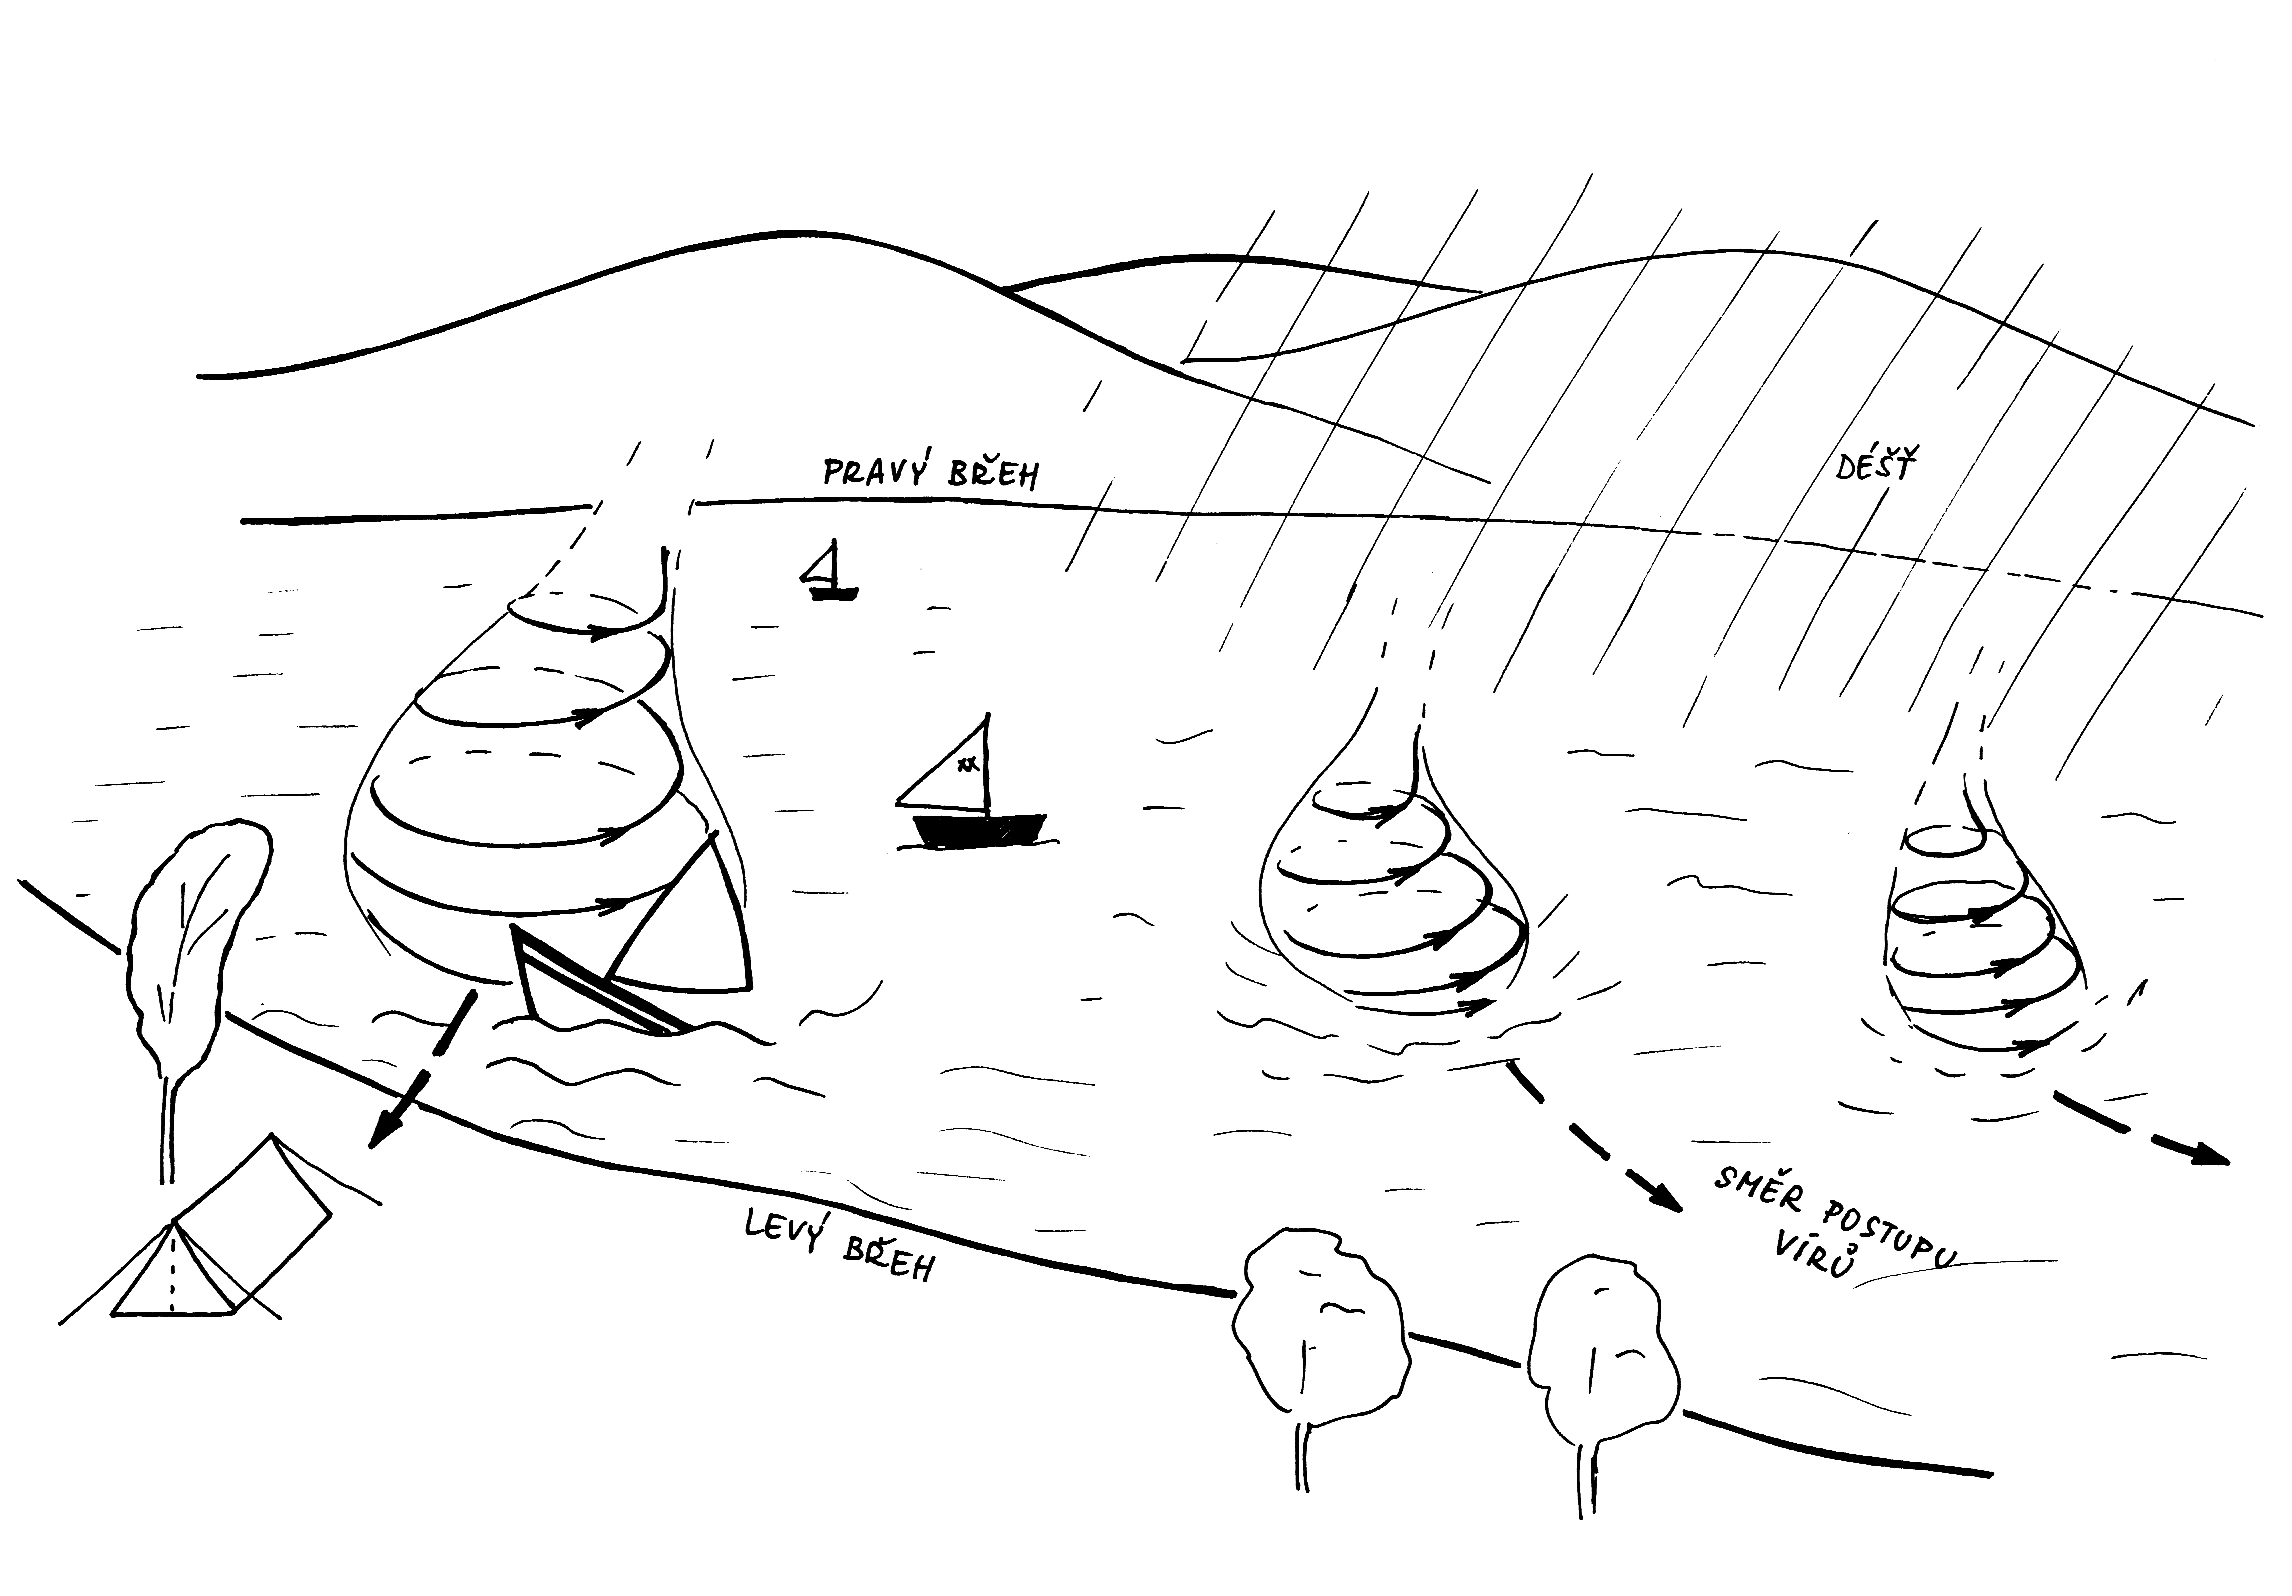 Kolem 16. hodiny UTC, v době příchodu výše uvedené squall-line, byly v oblasti vodní nádrže Lipno poblíž kempinku Jestřábí pozorovány tromby.